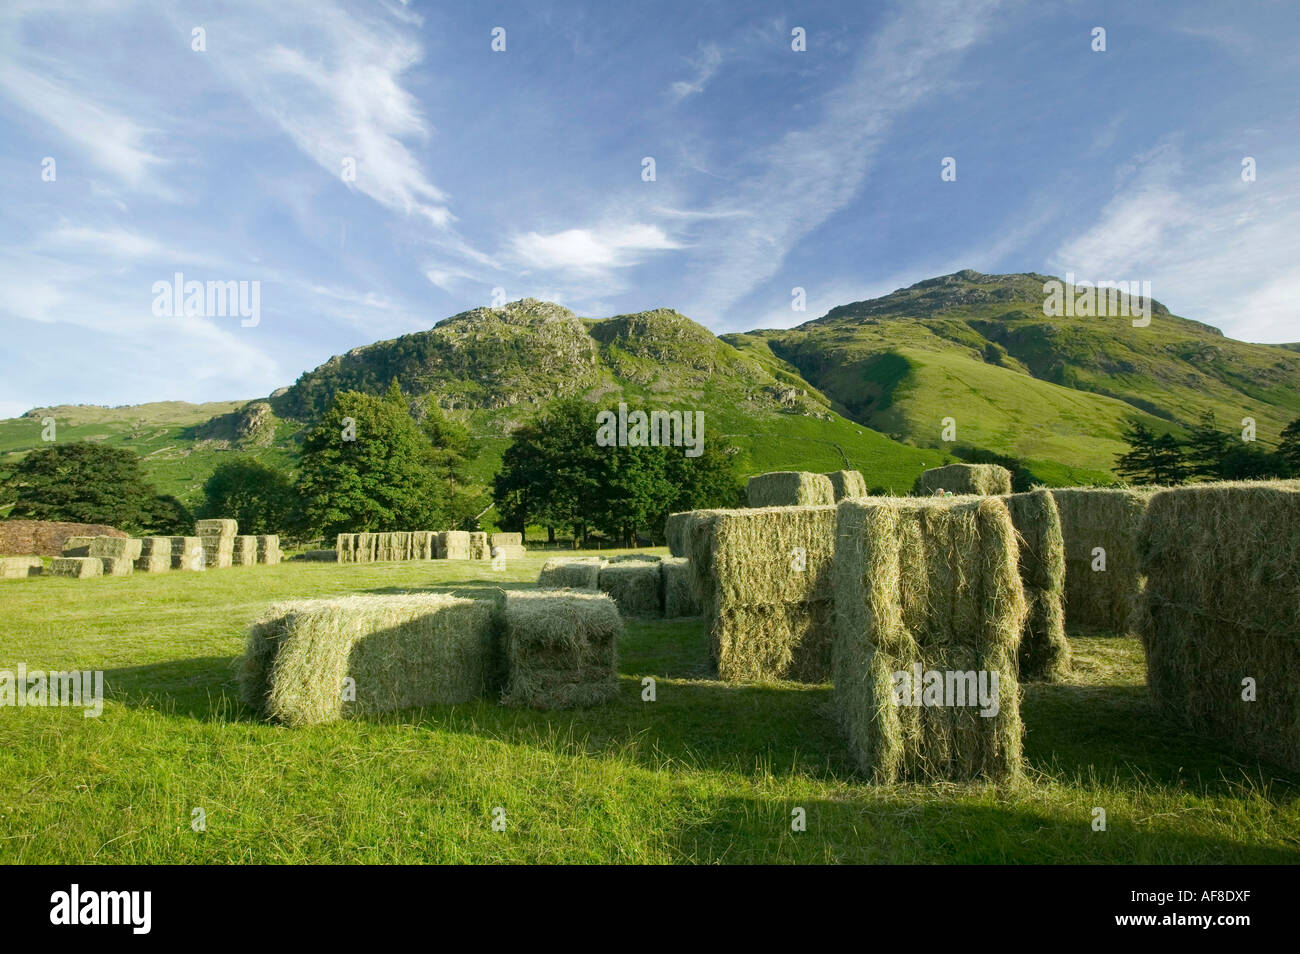 Bottes de foin sur une colline ferme à la tête de la vallée de Langdale, Lake district, UK Banque D'Images